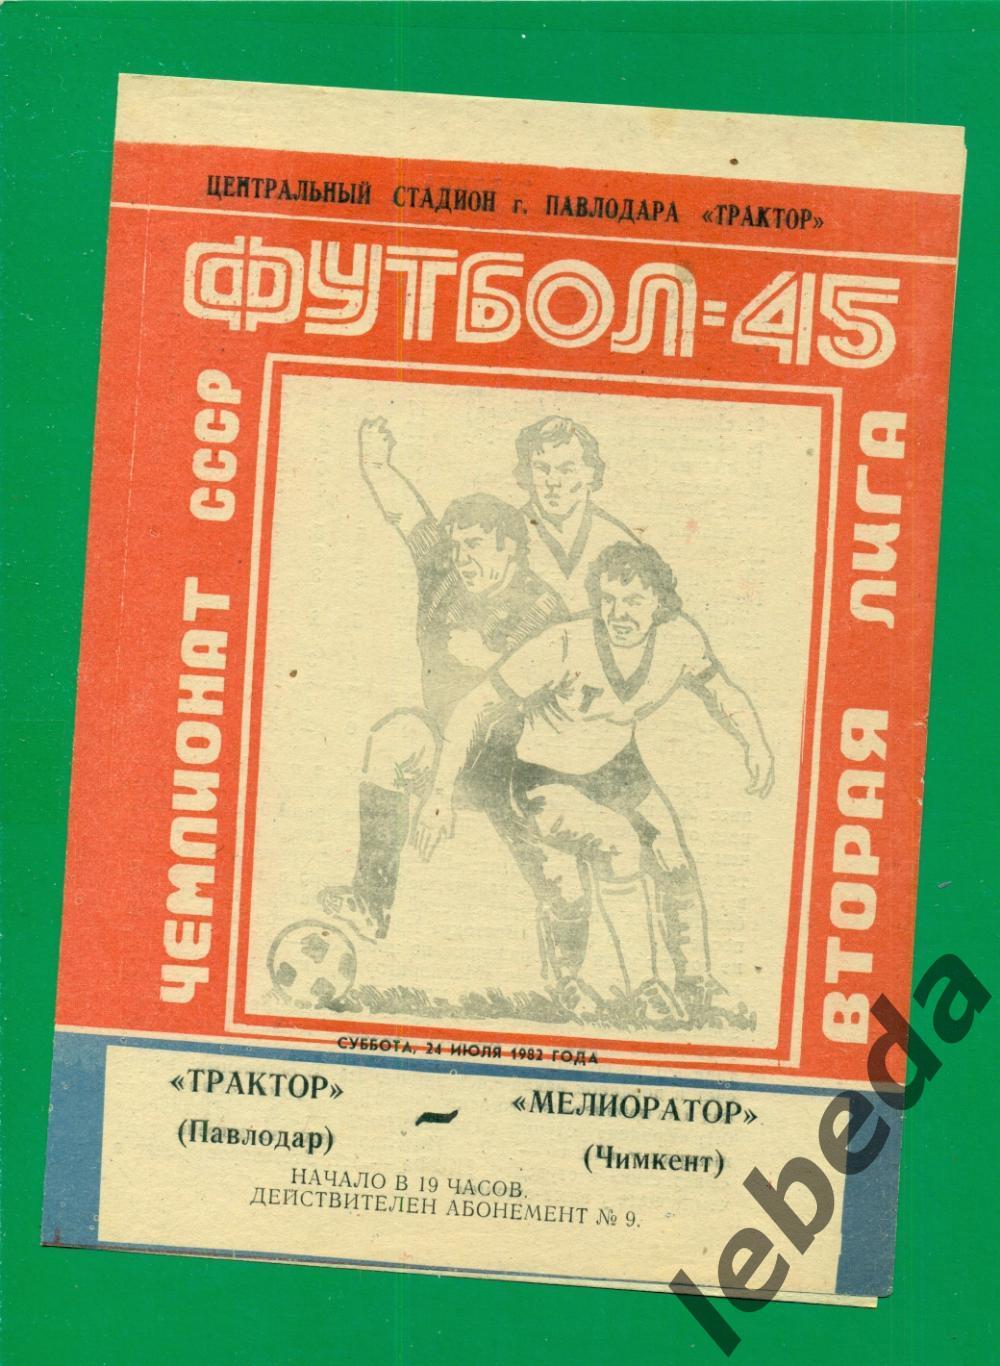 Трактор Павлодар - Мелиоратор чимкент - 1982 г. (24.08.82.)